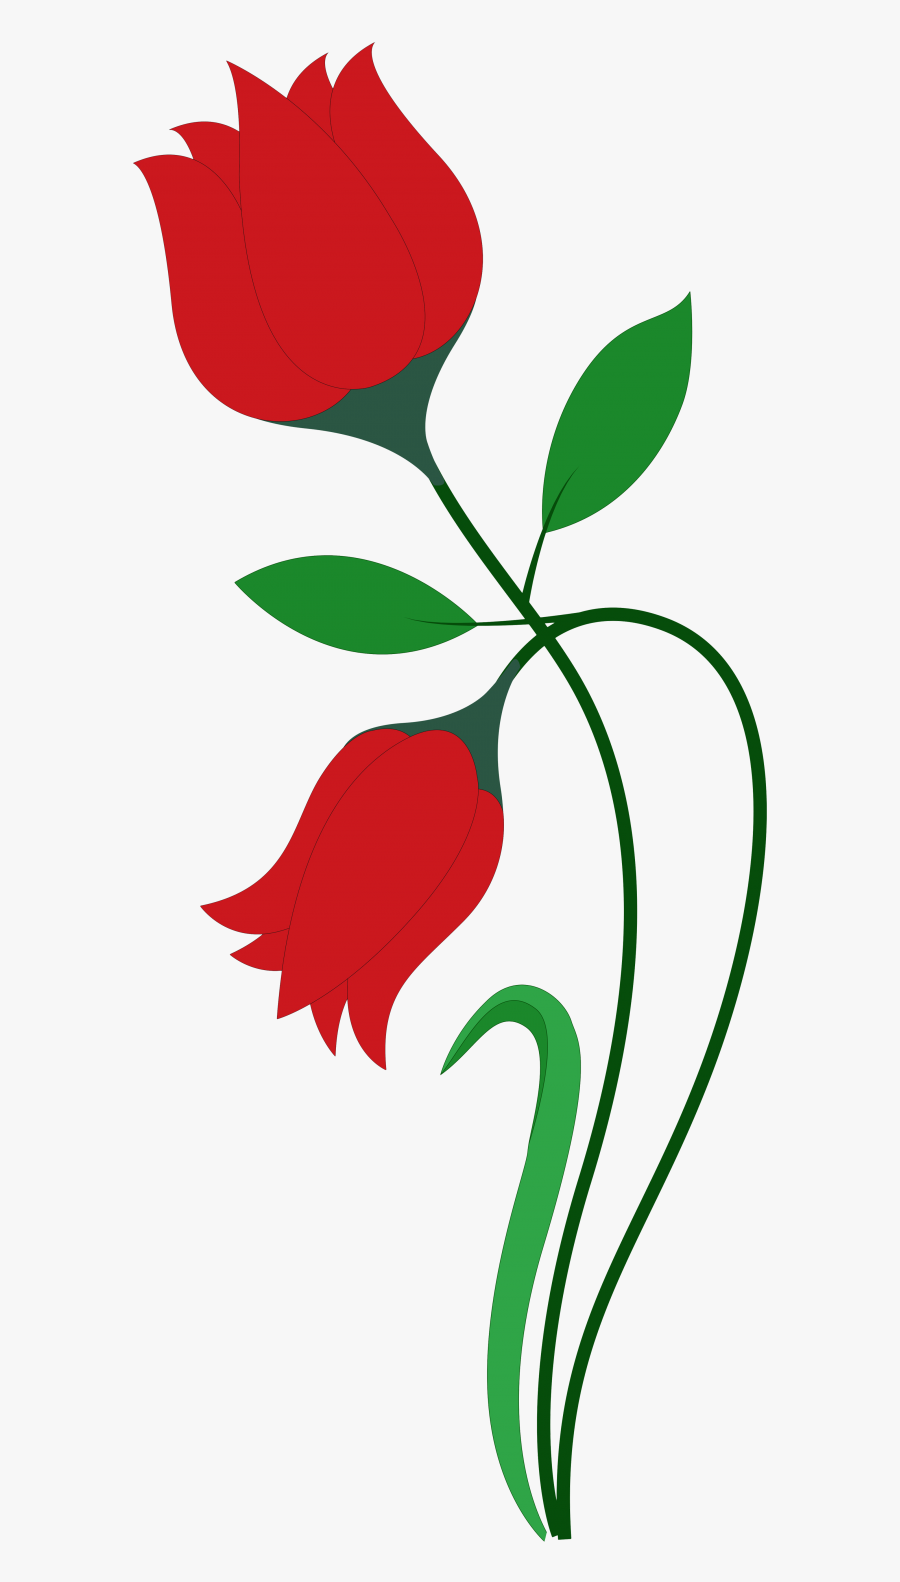 Free Rose Flower Vector Png Transparent Image - Rose Flower Painting Frame Png, Transparent Clipart